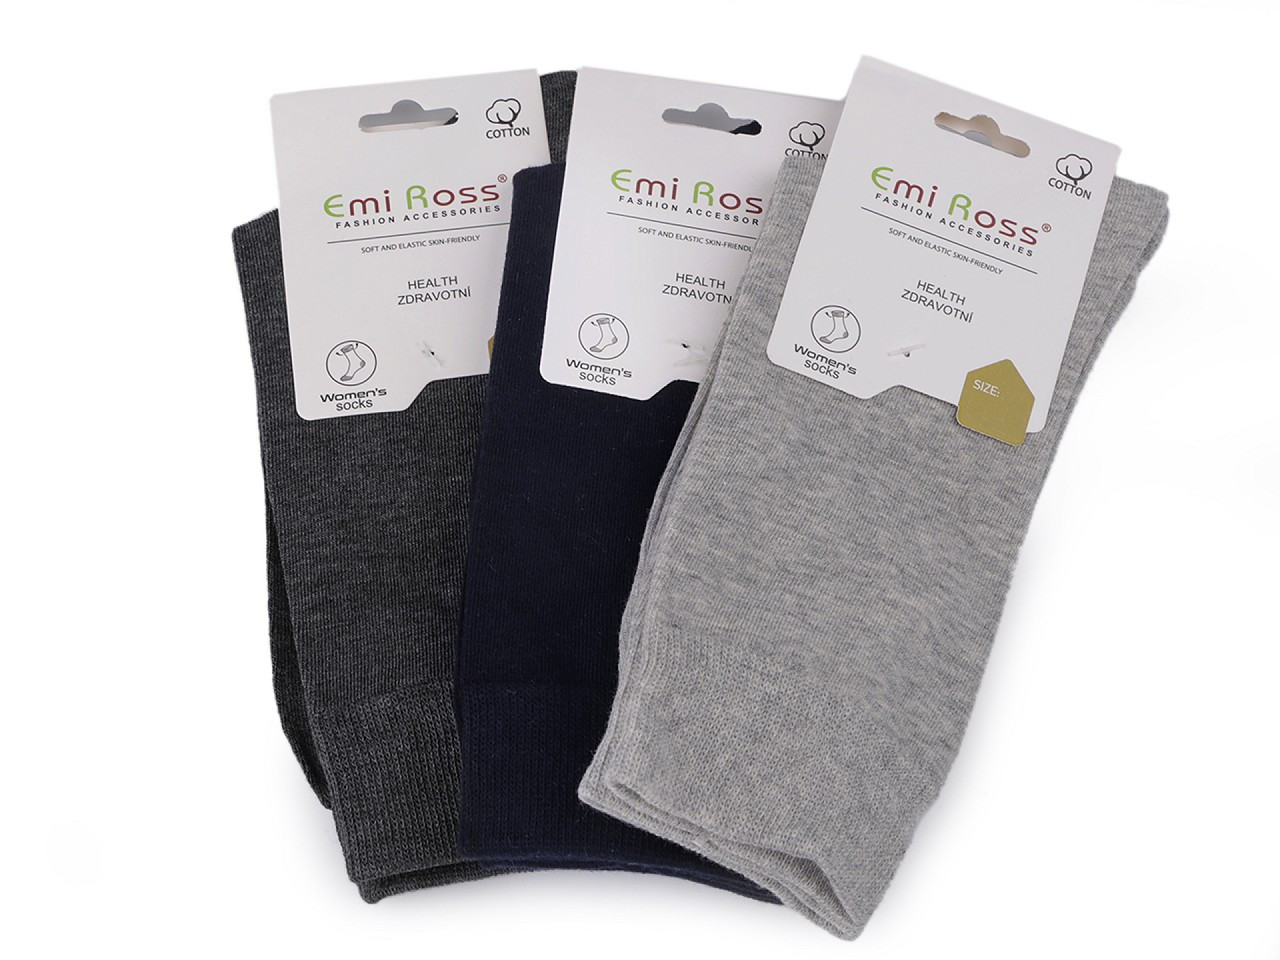 Dámské bavlněné ponožky Emi Ross, barva 24 (vel. 35-38) mix